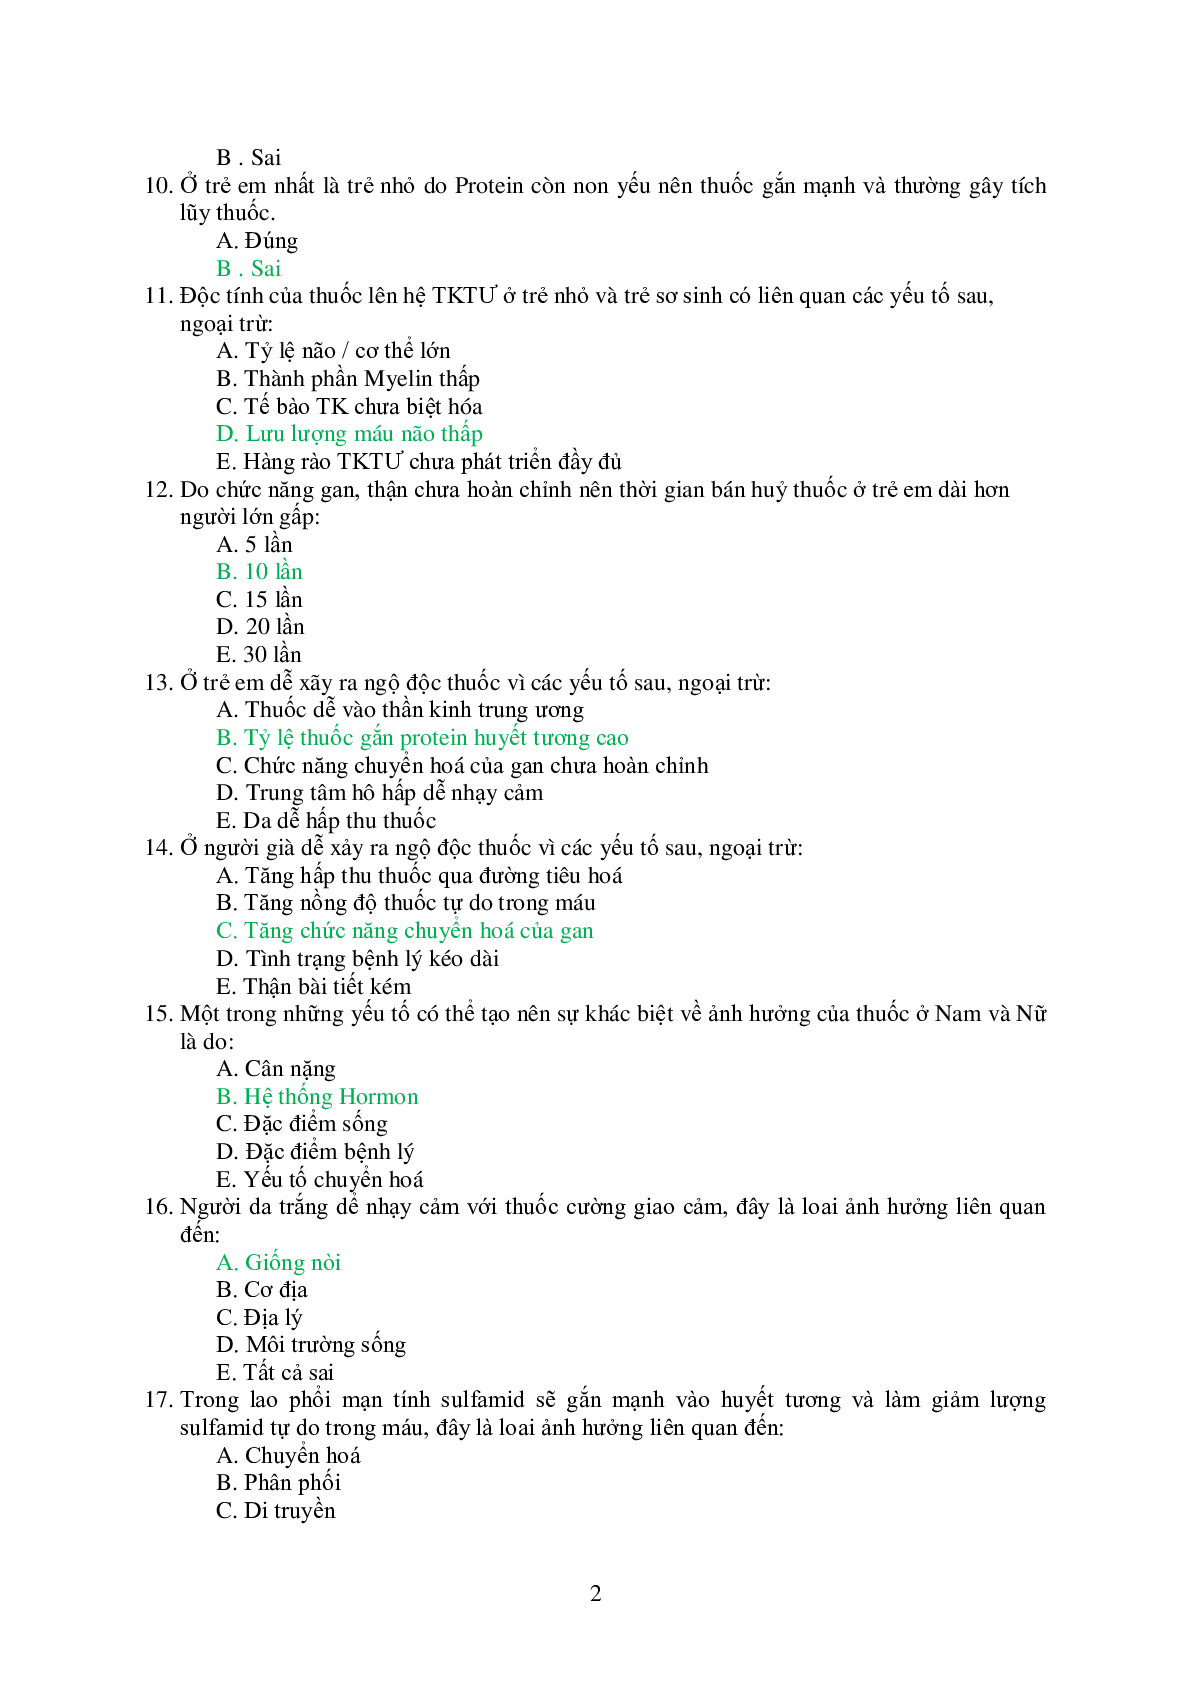 Ngân hàng bài tập trắc nghiệm Dược lý 2 (có đáp án) (trang 2)